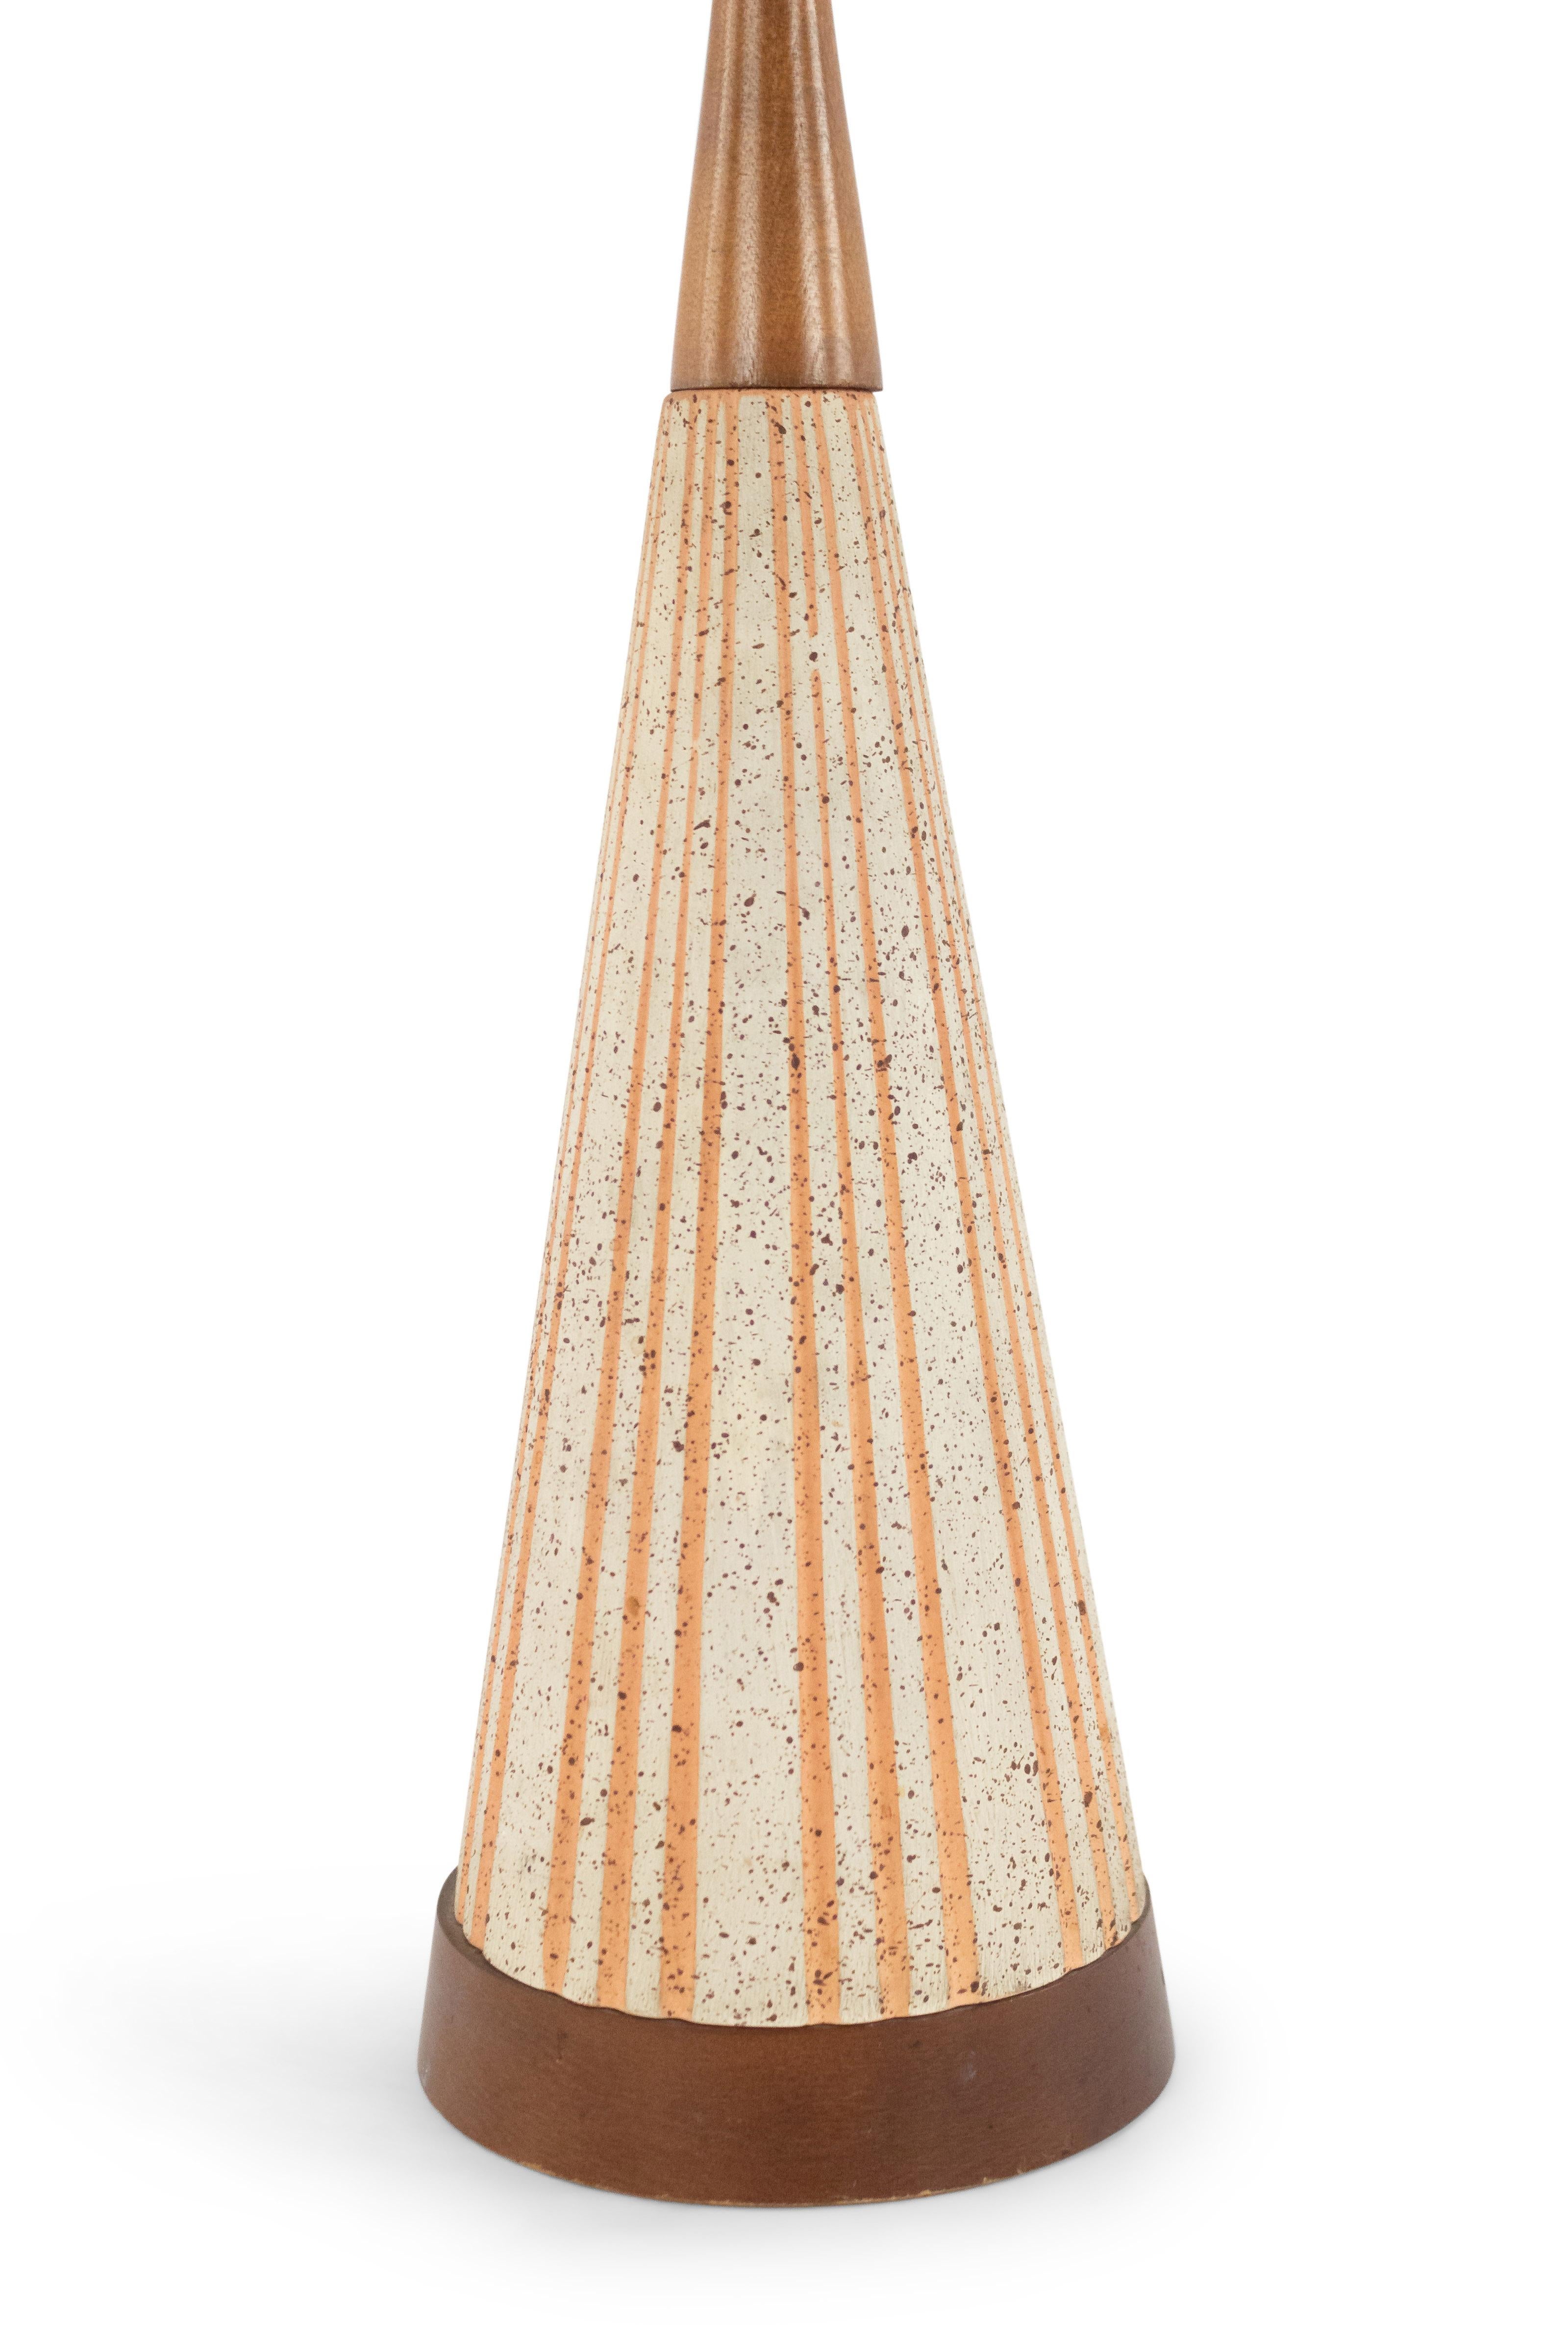 Amerikanische kegelförmige Keramik-Tischlampe aus der Mitte des Jahrhunderts (1960er Jahre) mit orangefarbenem, geriffeltem Design, die auf einem runden Holzsockel mit einer ähnlichen, sich verjüngenden Spitze ruht.